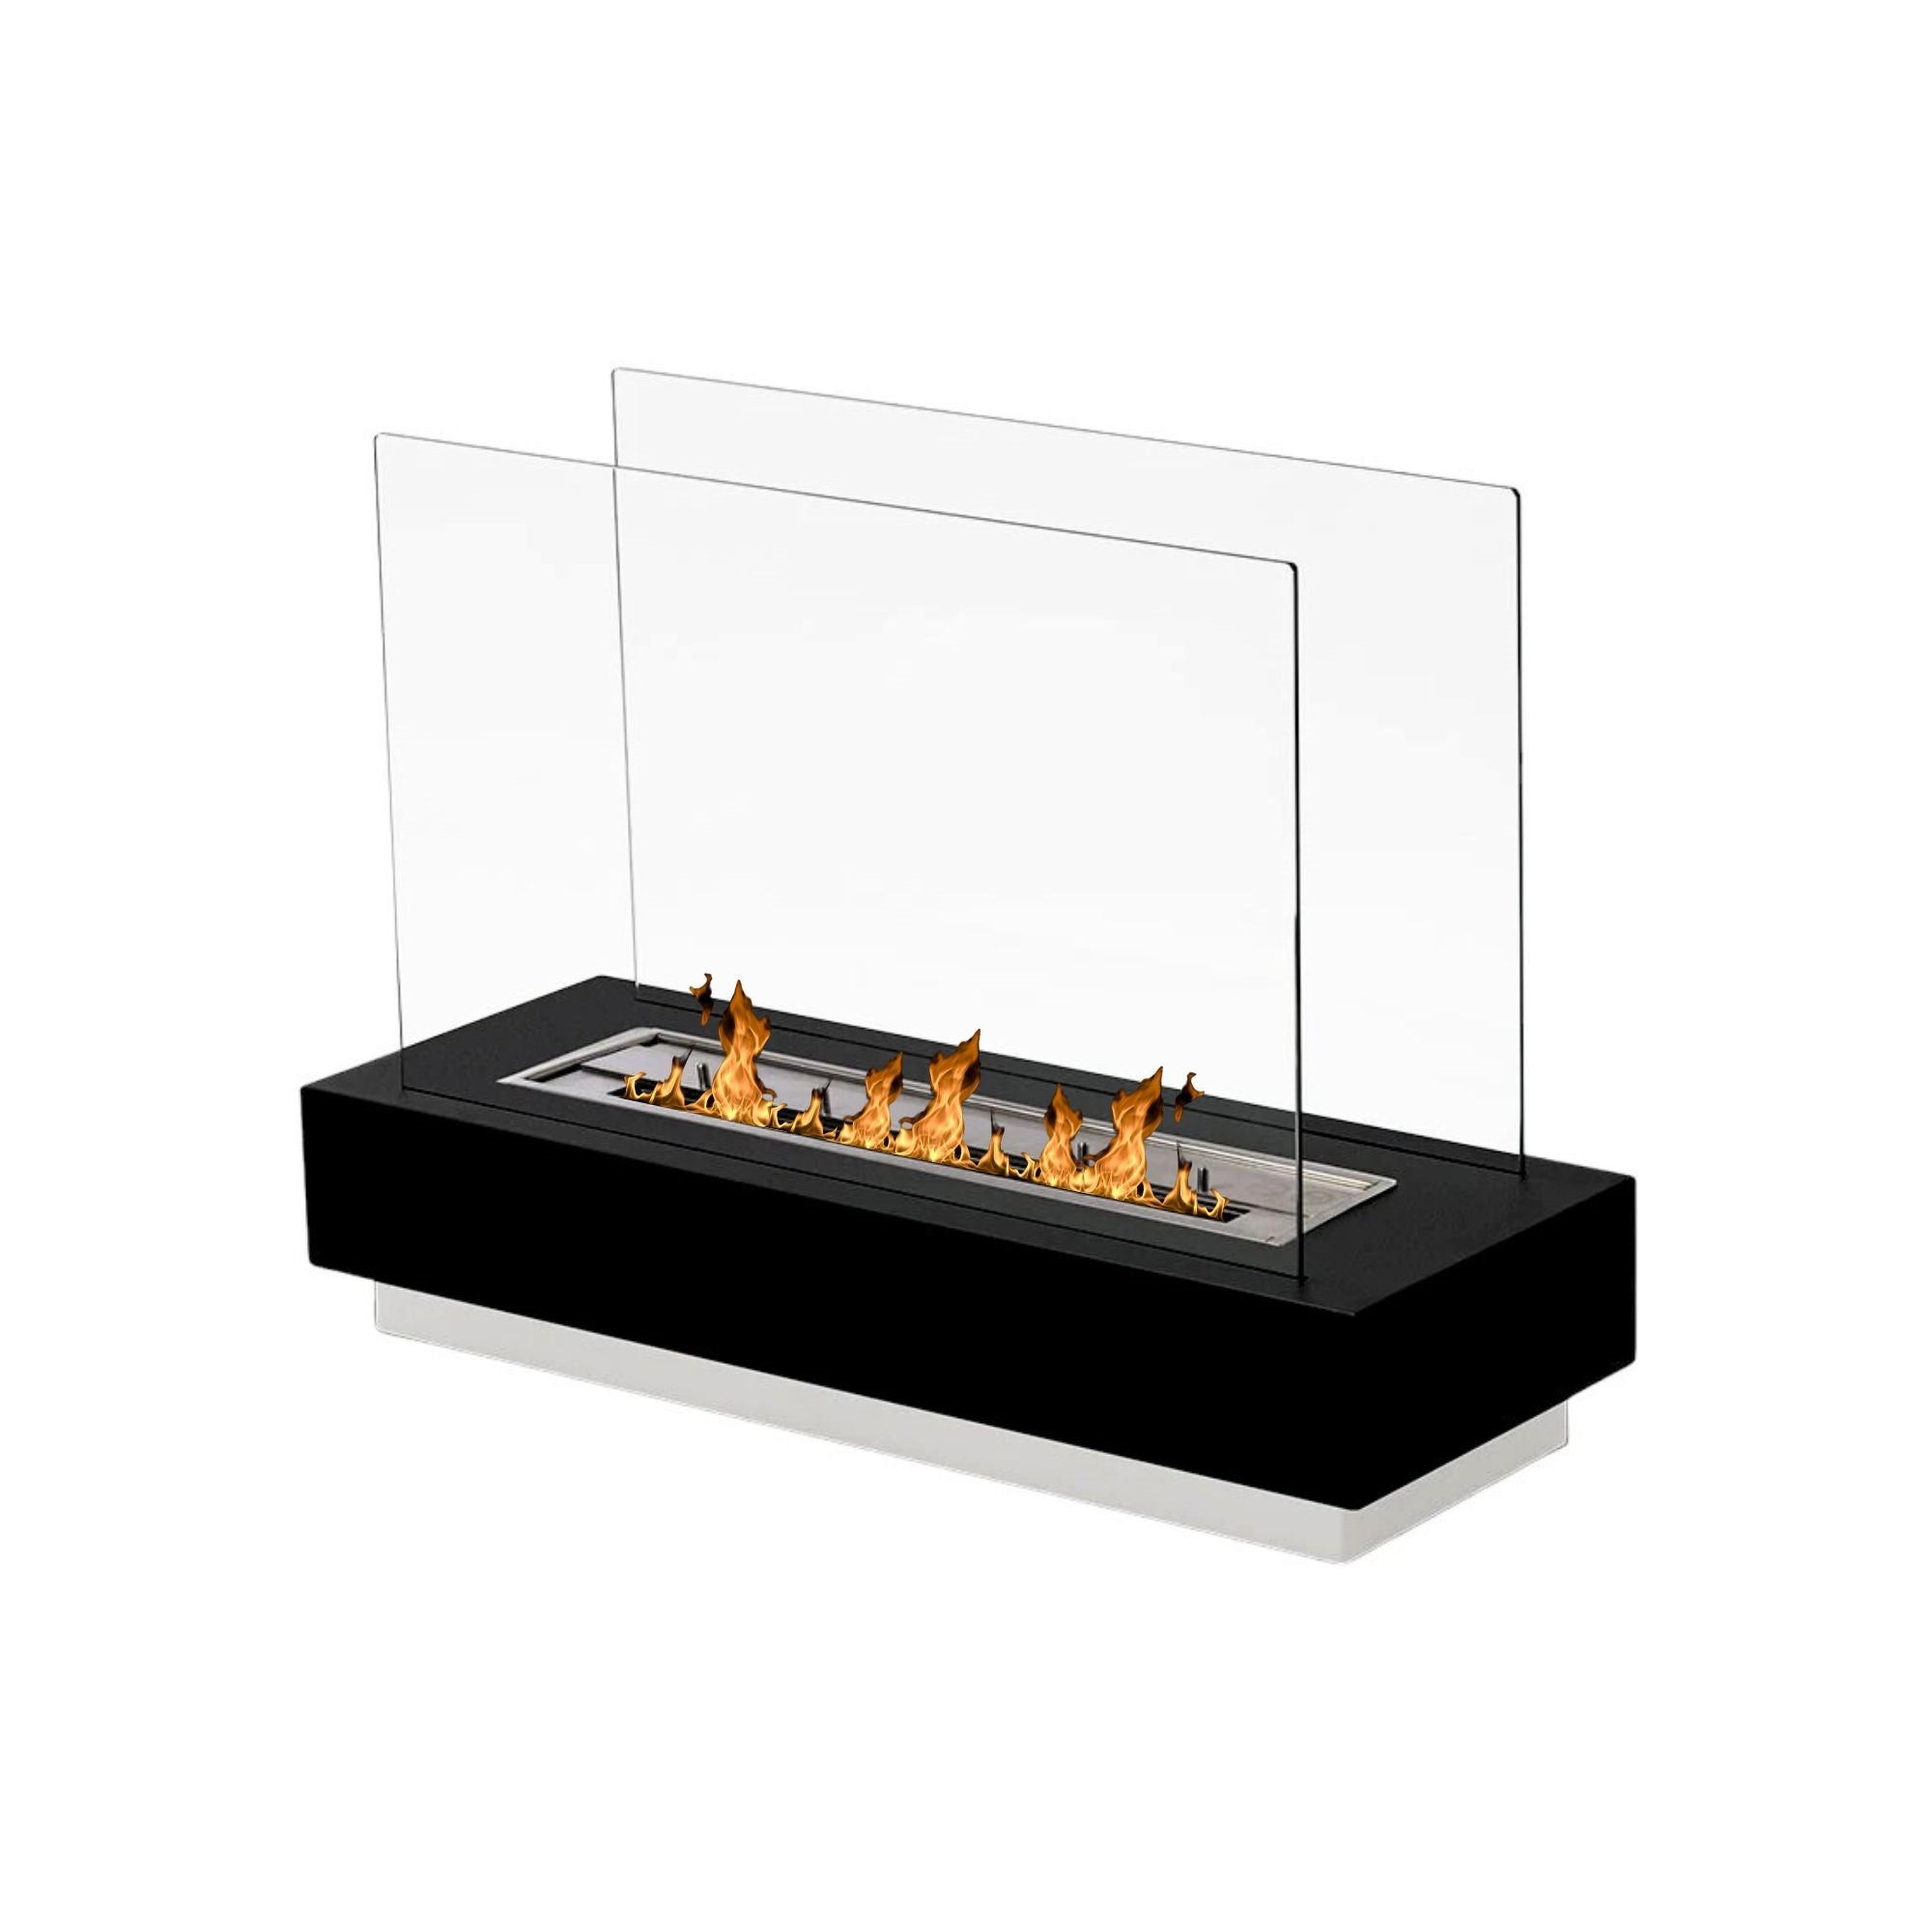 Cara Black Bio-Ethanol Freestanding Fireplace 80 CM